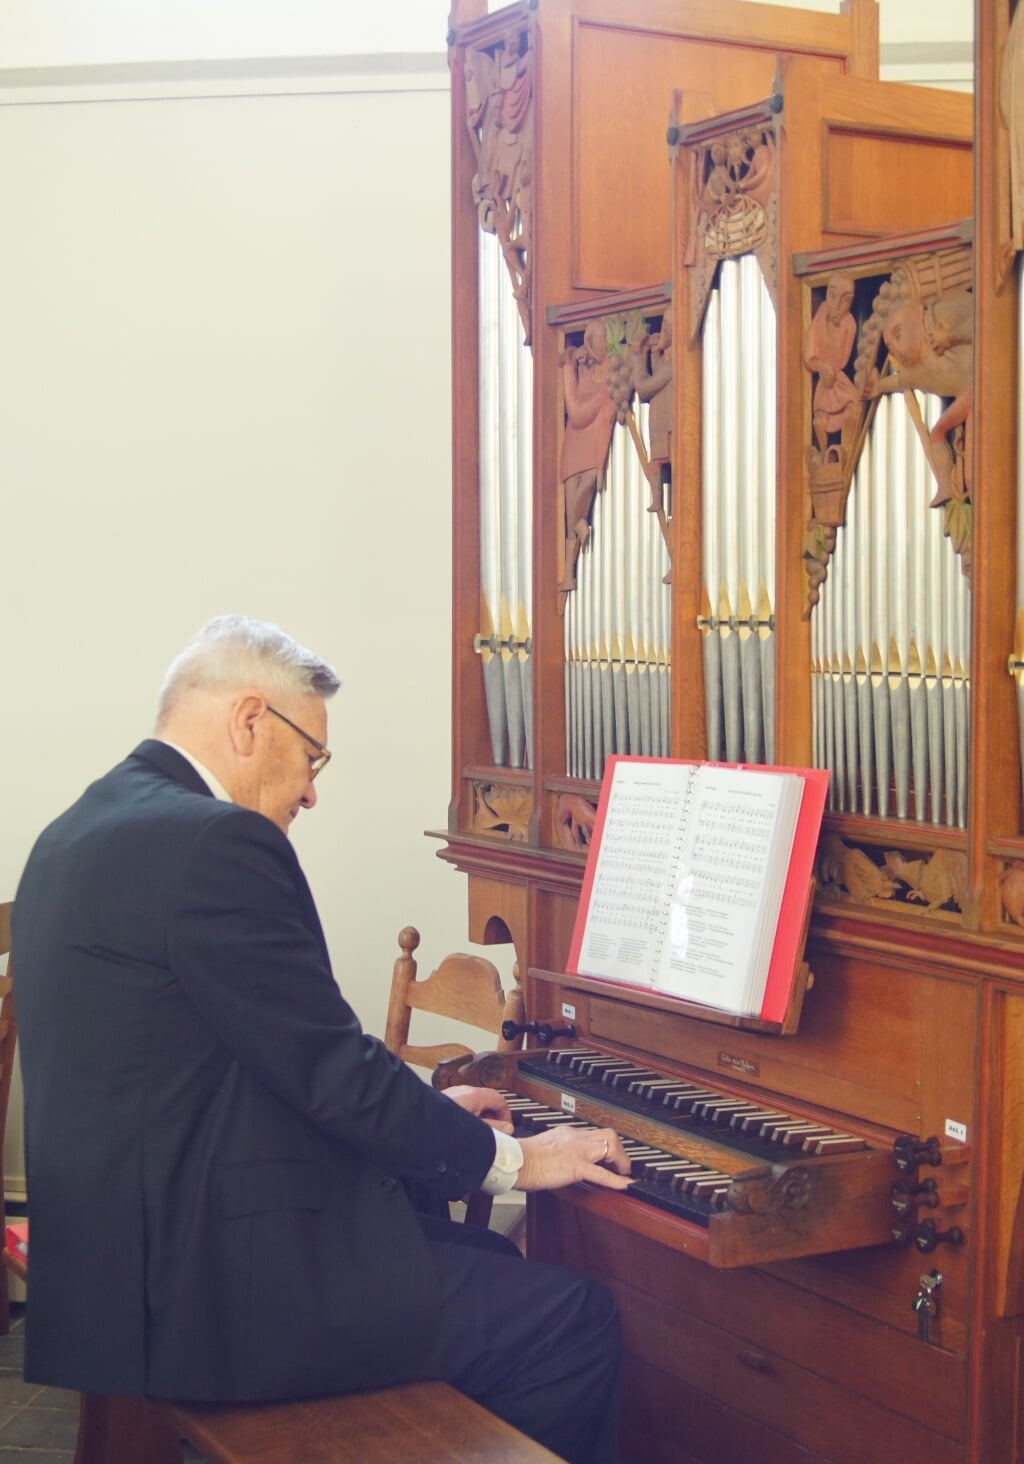 Aad de Heijer orgel spelend. (foto: Gert Jan van Wezel)